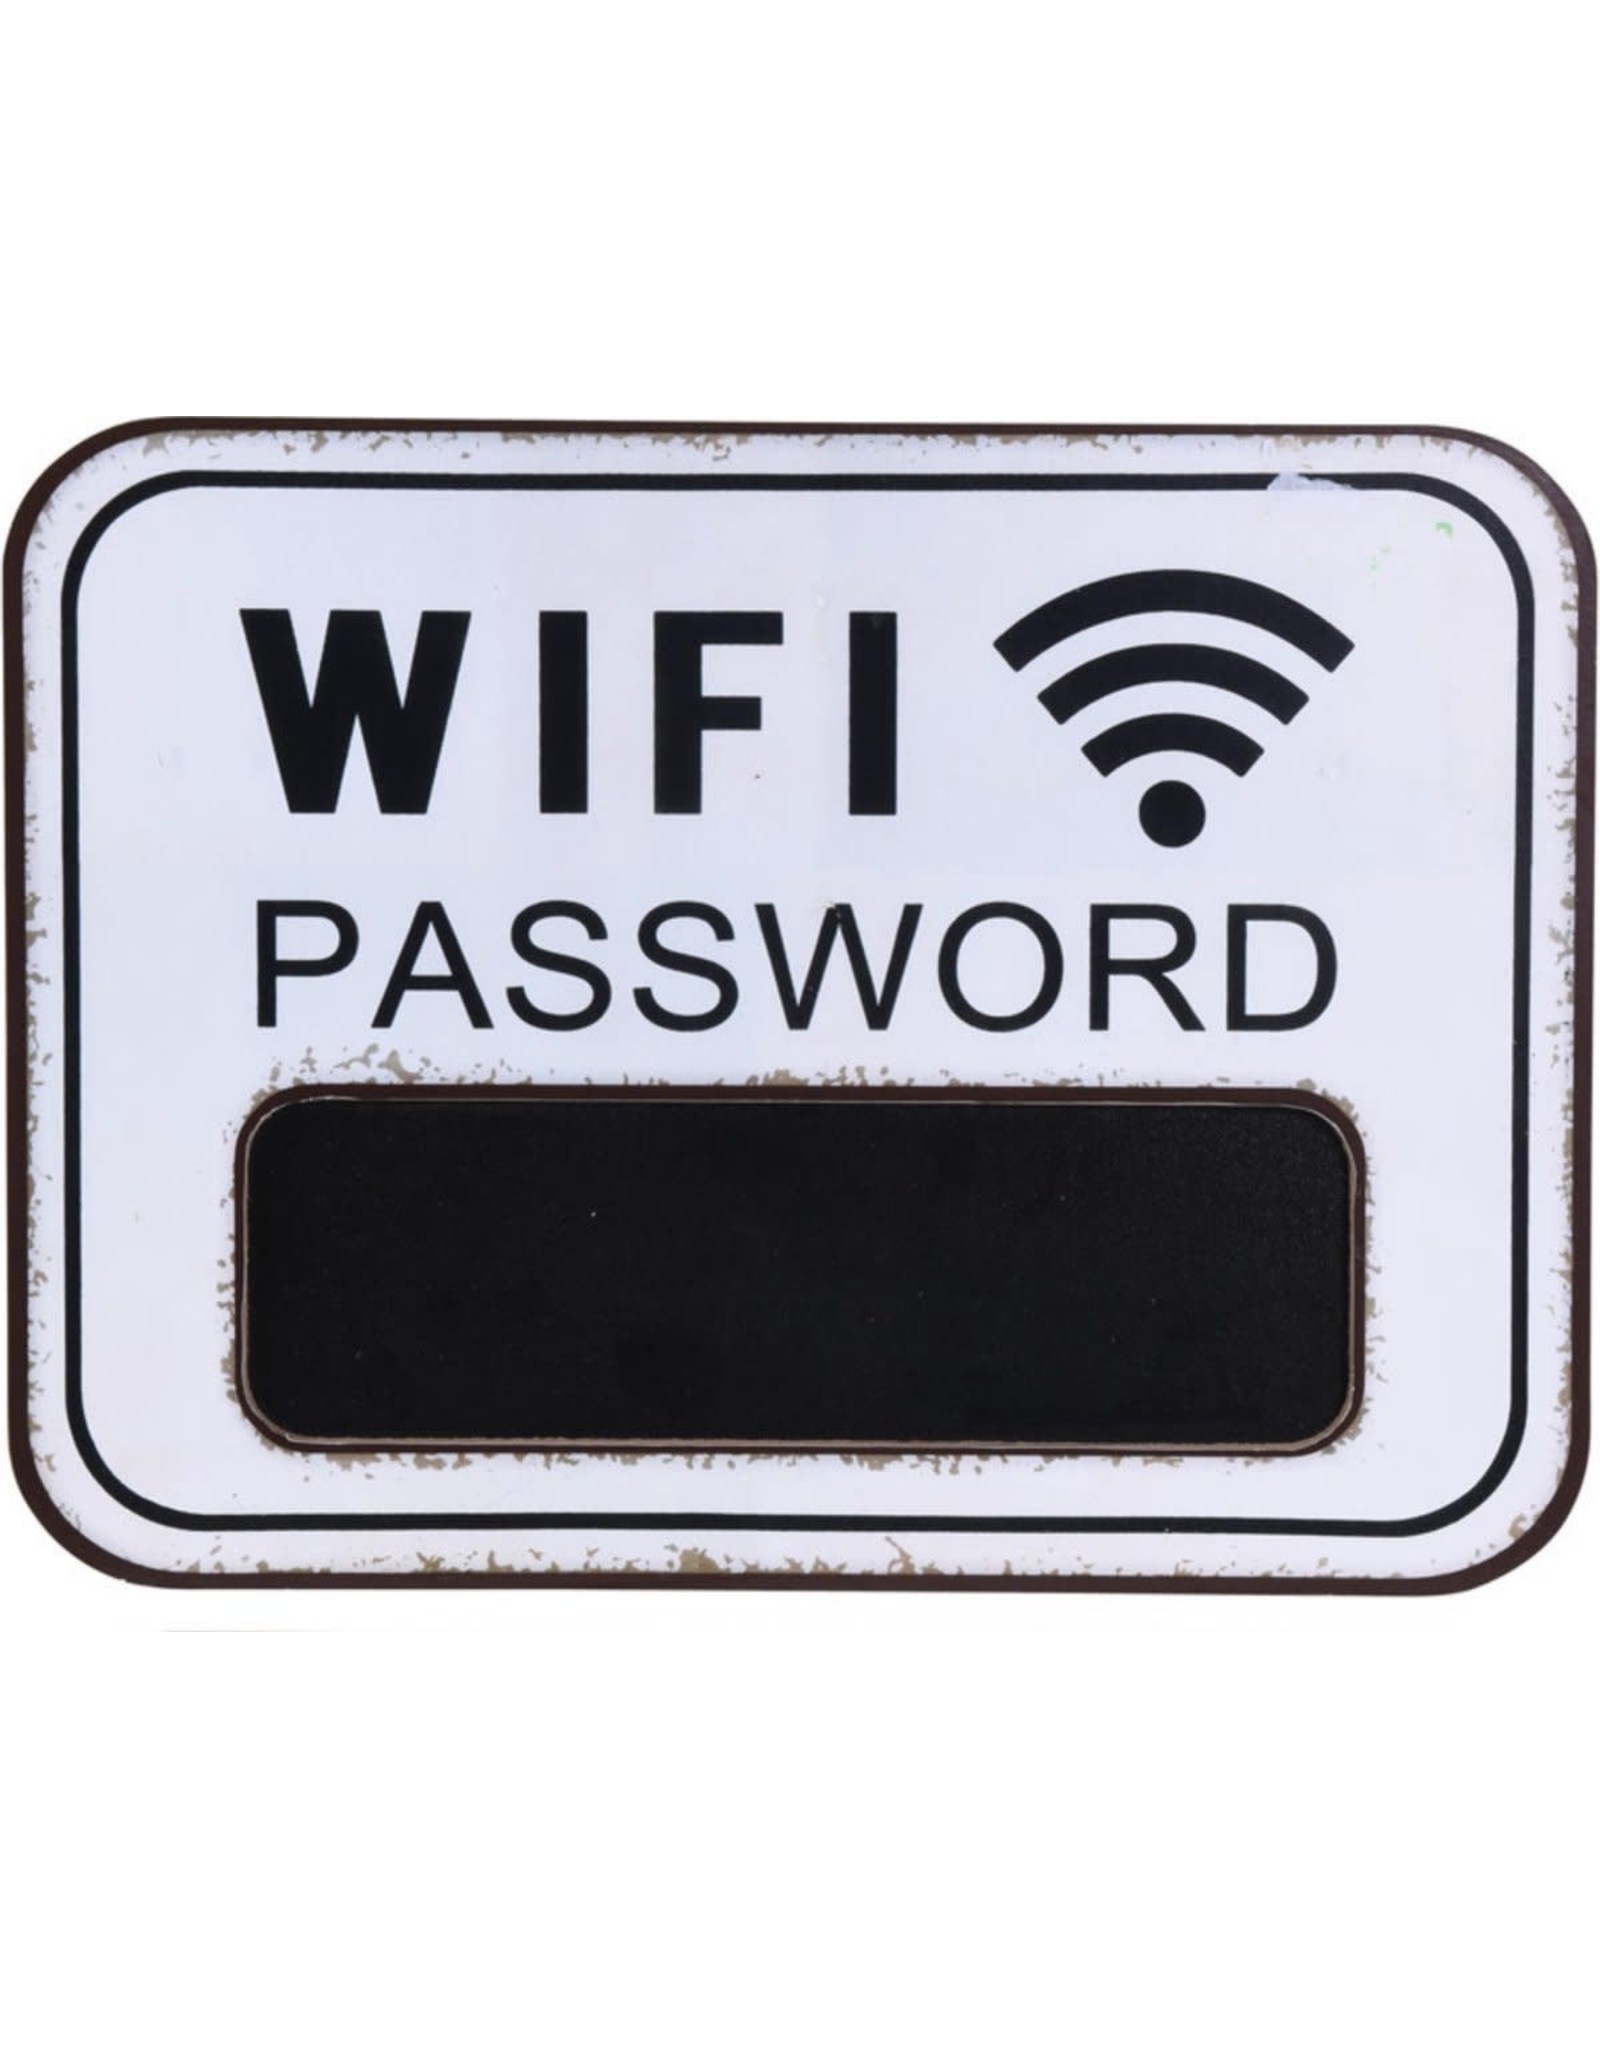 Jelly Jazz chalkboard - wifi password